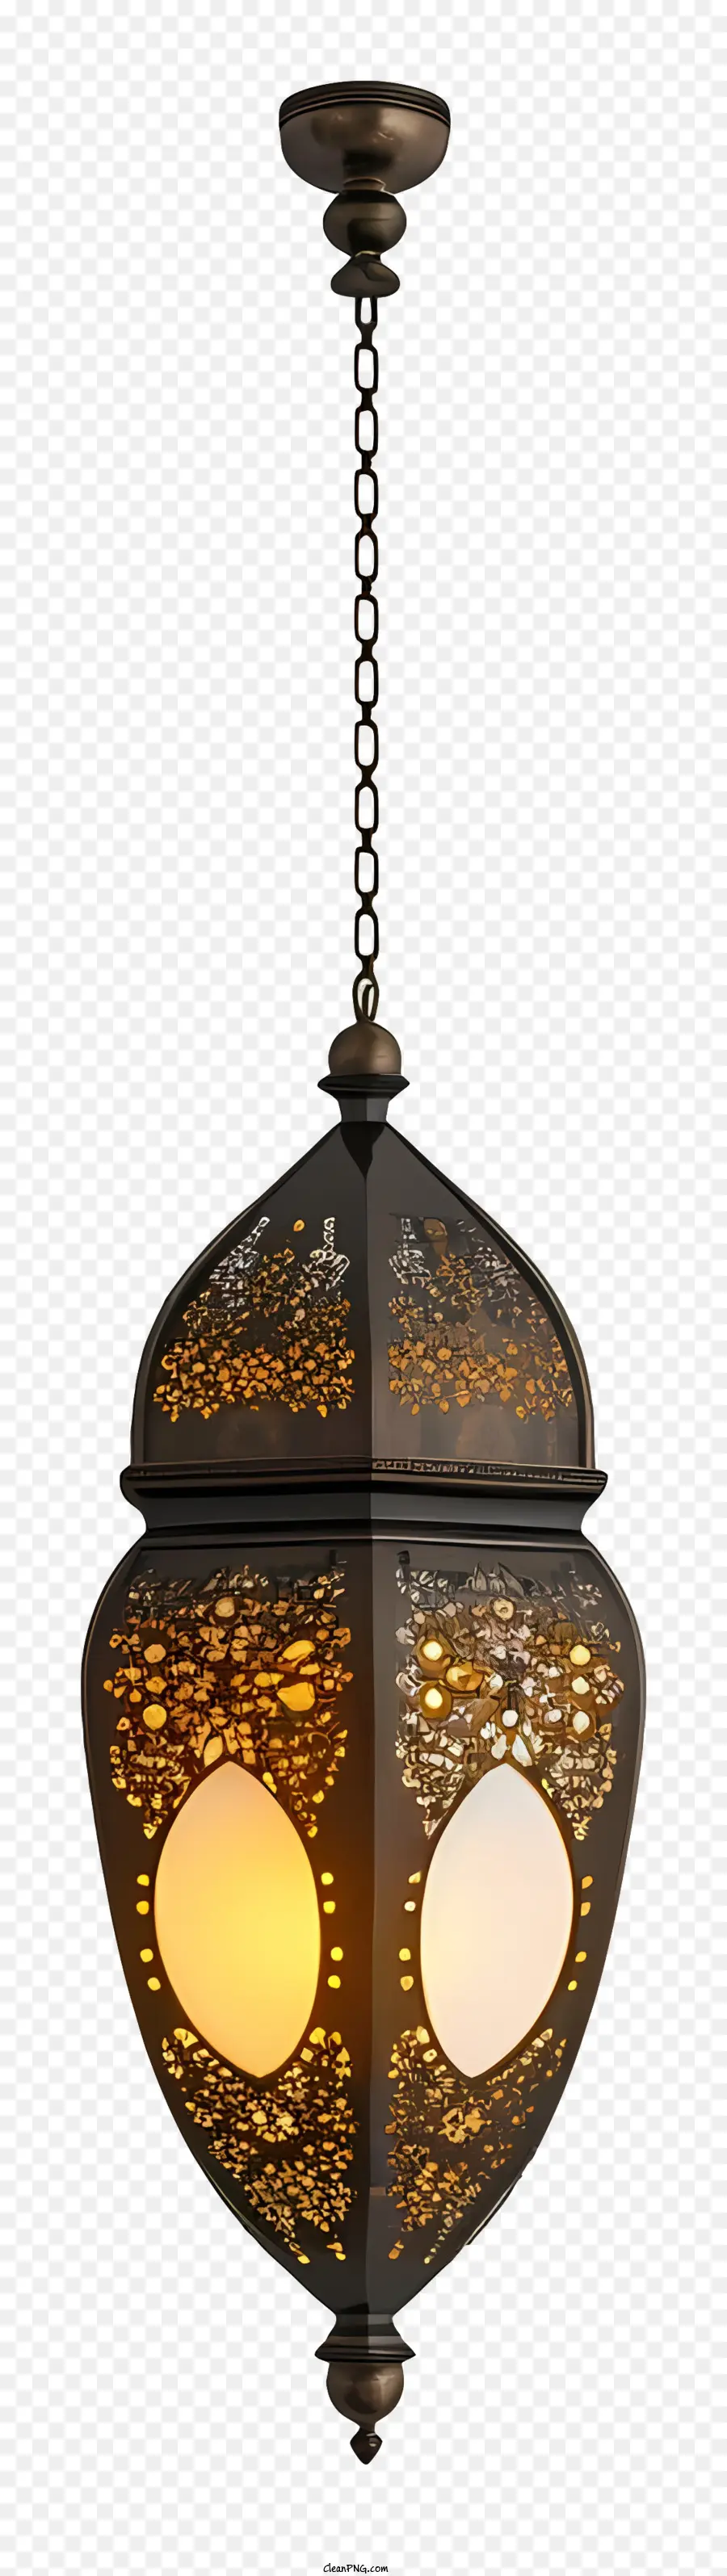 Hồi giáo đèn - Đèn chùm cổ với thiết kế phức tạp, treo lơ lửng từ trần